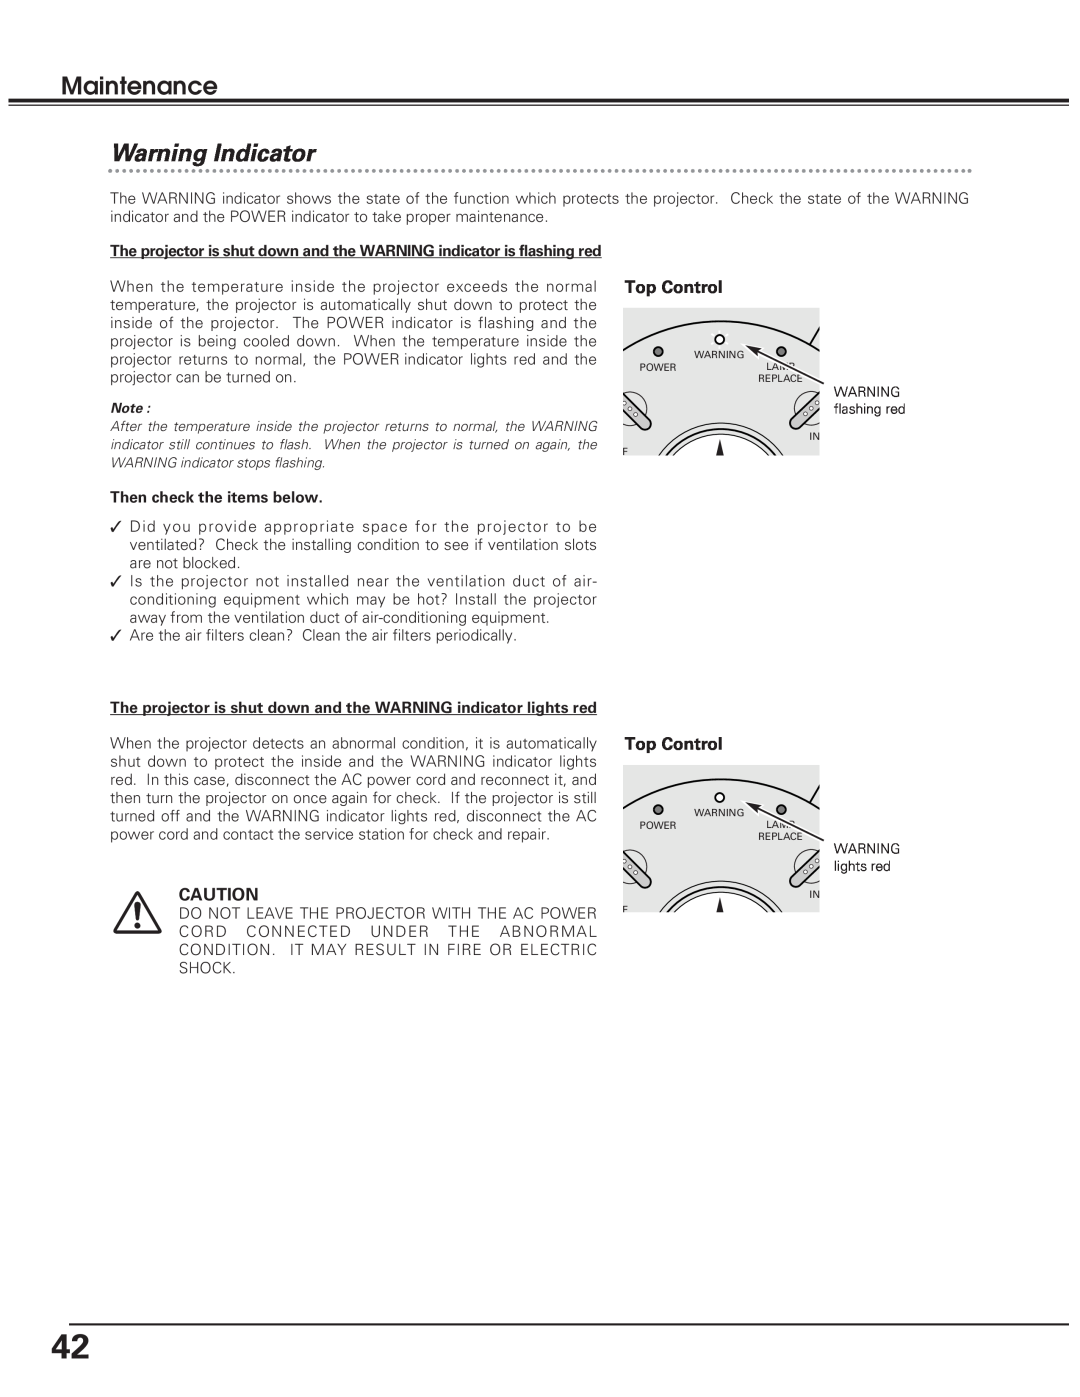 Eiki LC-SD10 owner manual Warning Indicator, Top Control, Maintenance 